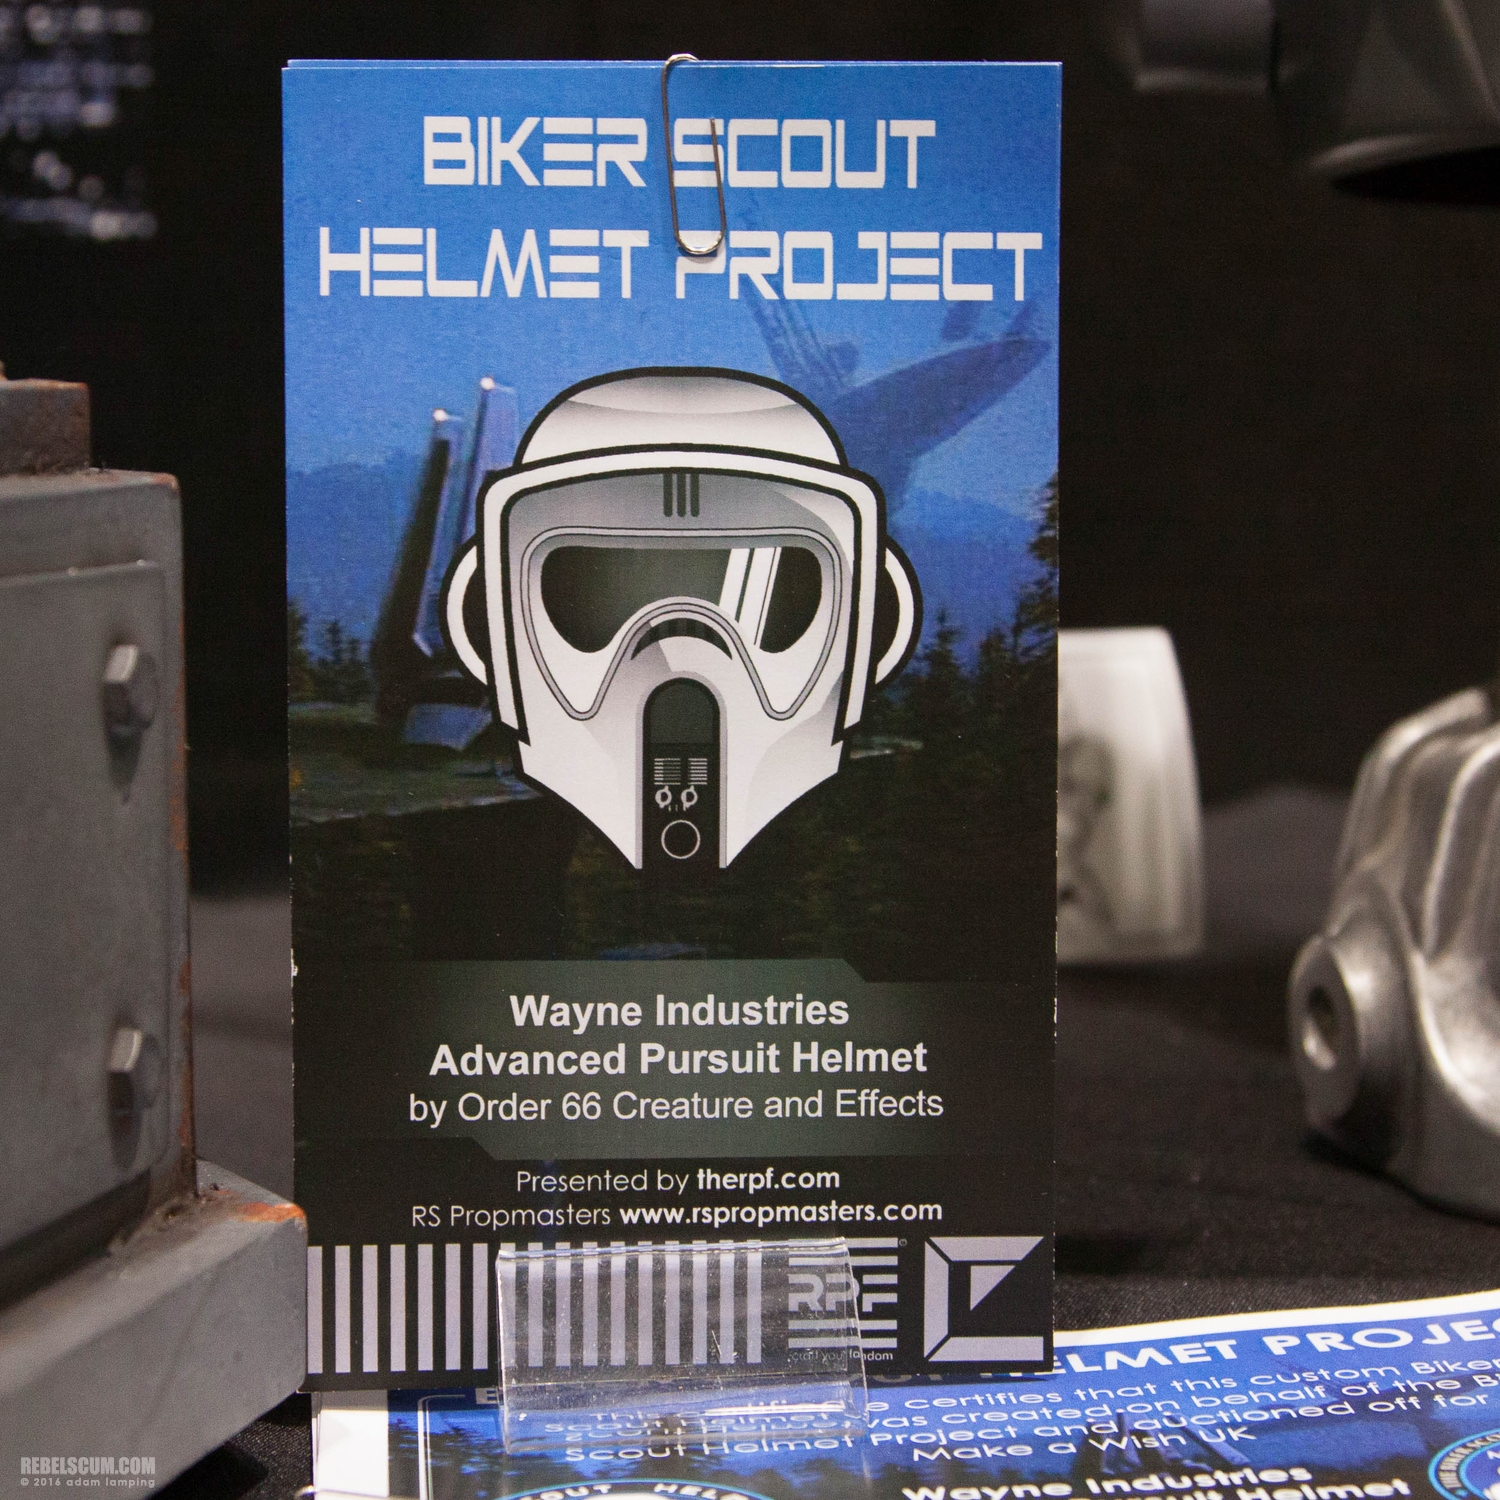 star-wars-celebration-2016-biker-scout-helmet-project-124.jpg